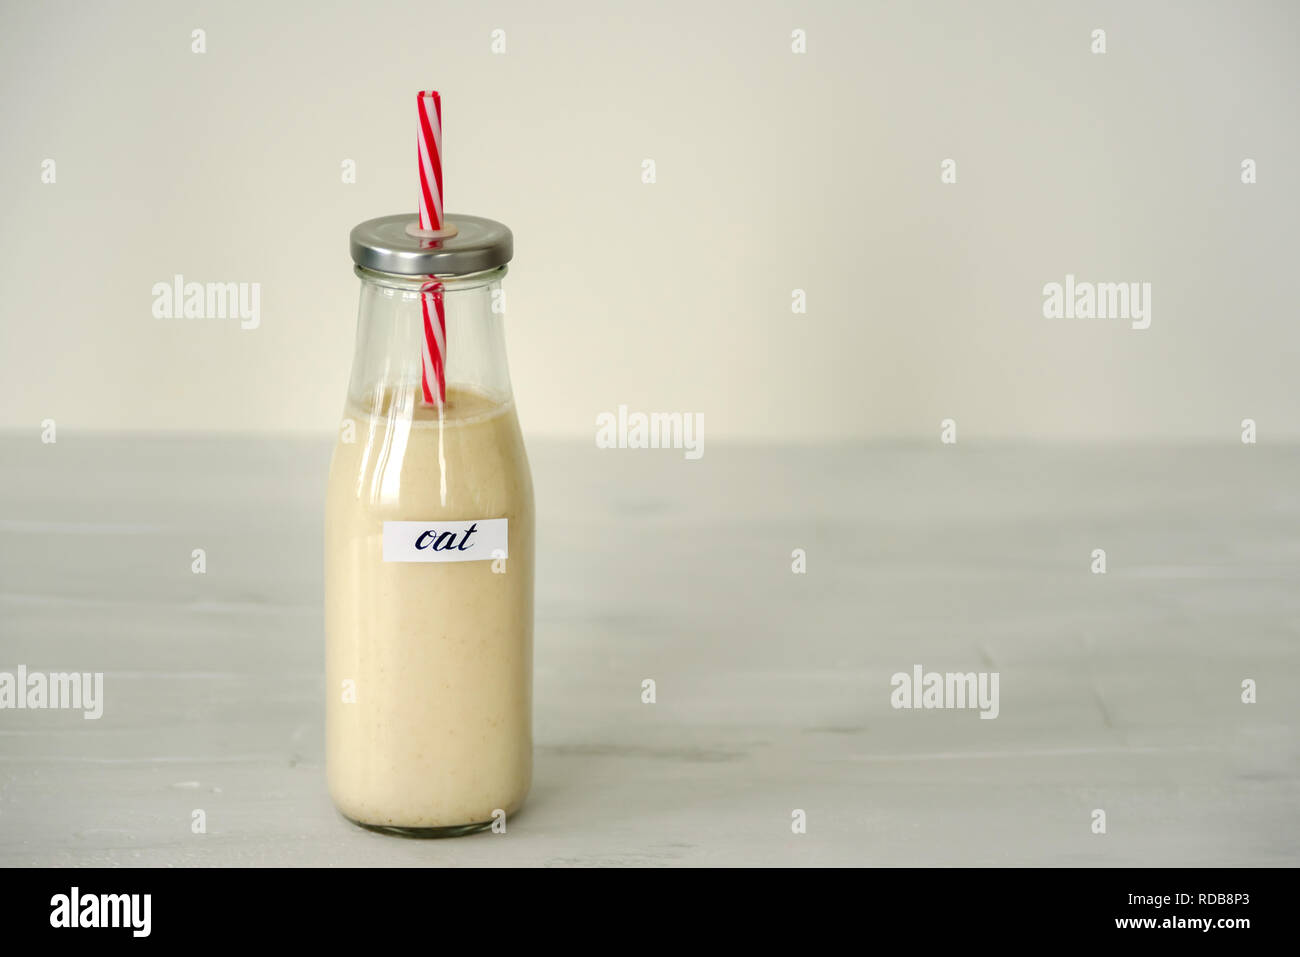 Glass bottle of oat milk on white background. Stock Photo